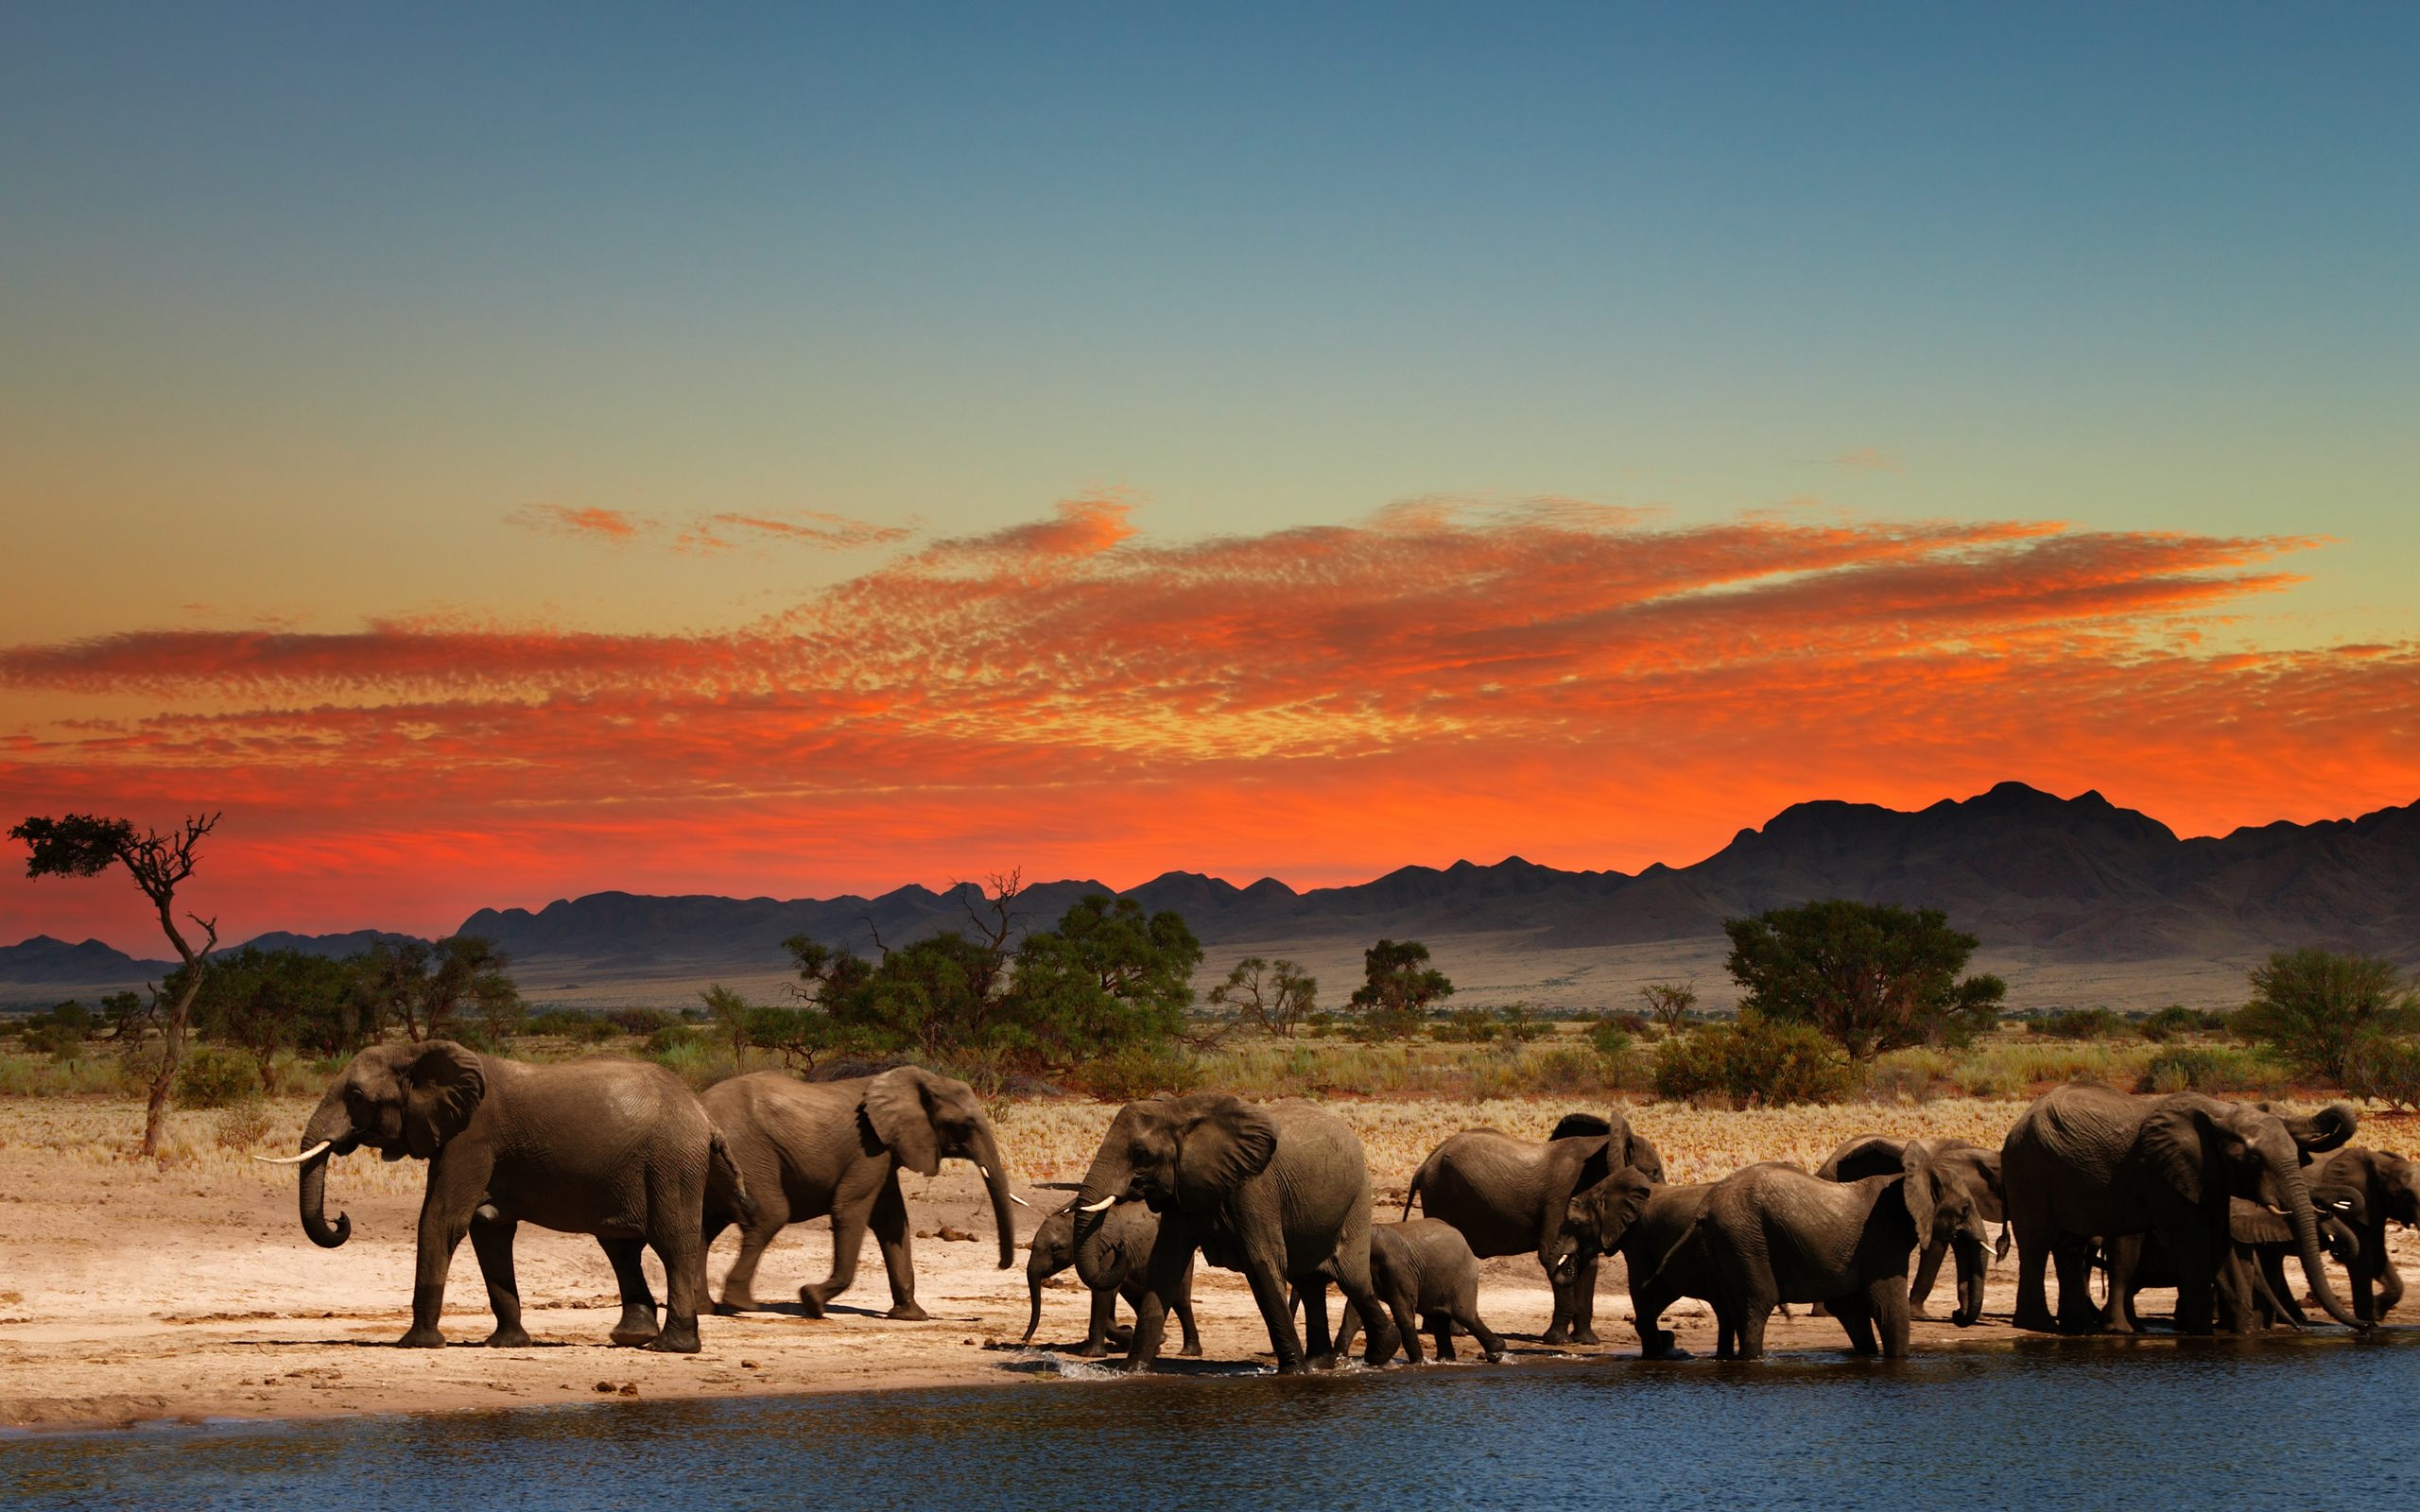  Elephants in African savanna 4K Ultra HD wallpaper 4k WallpaperNet